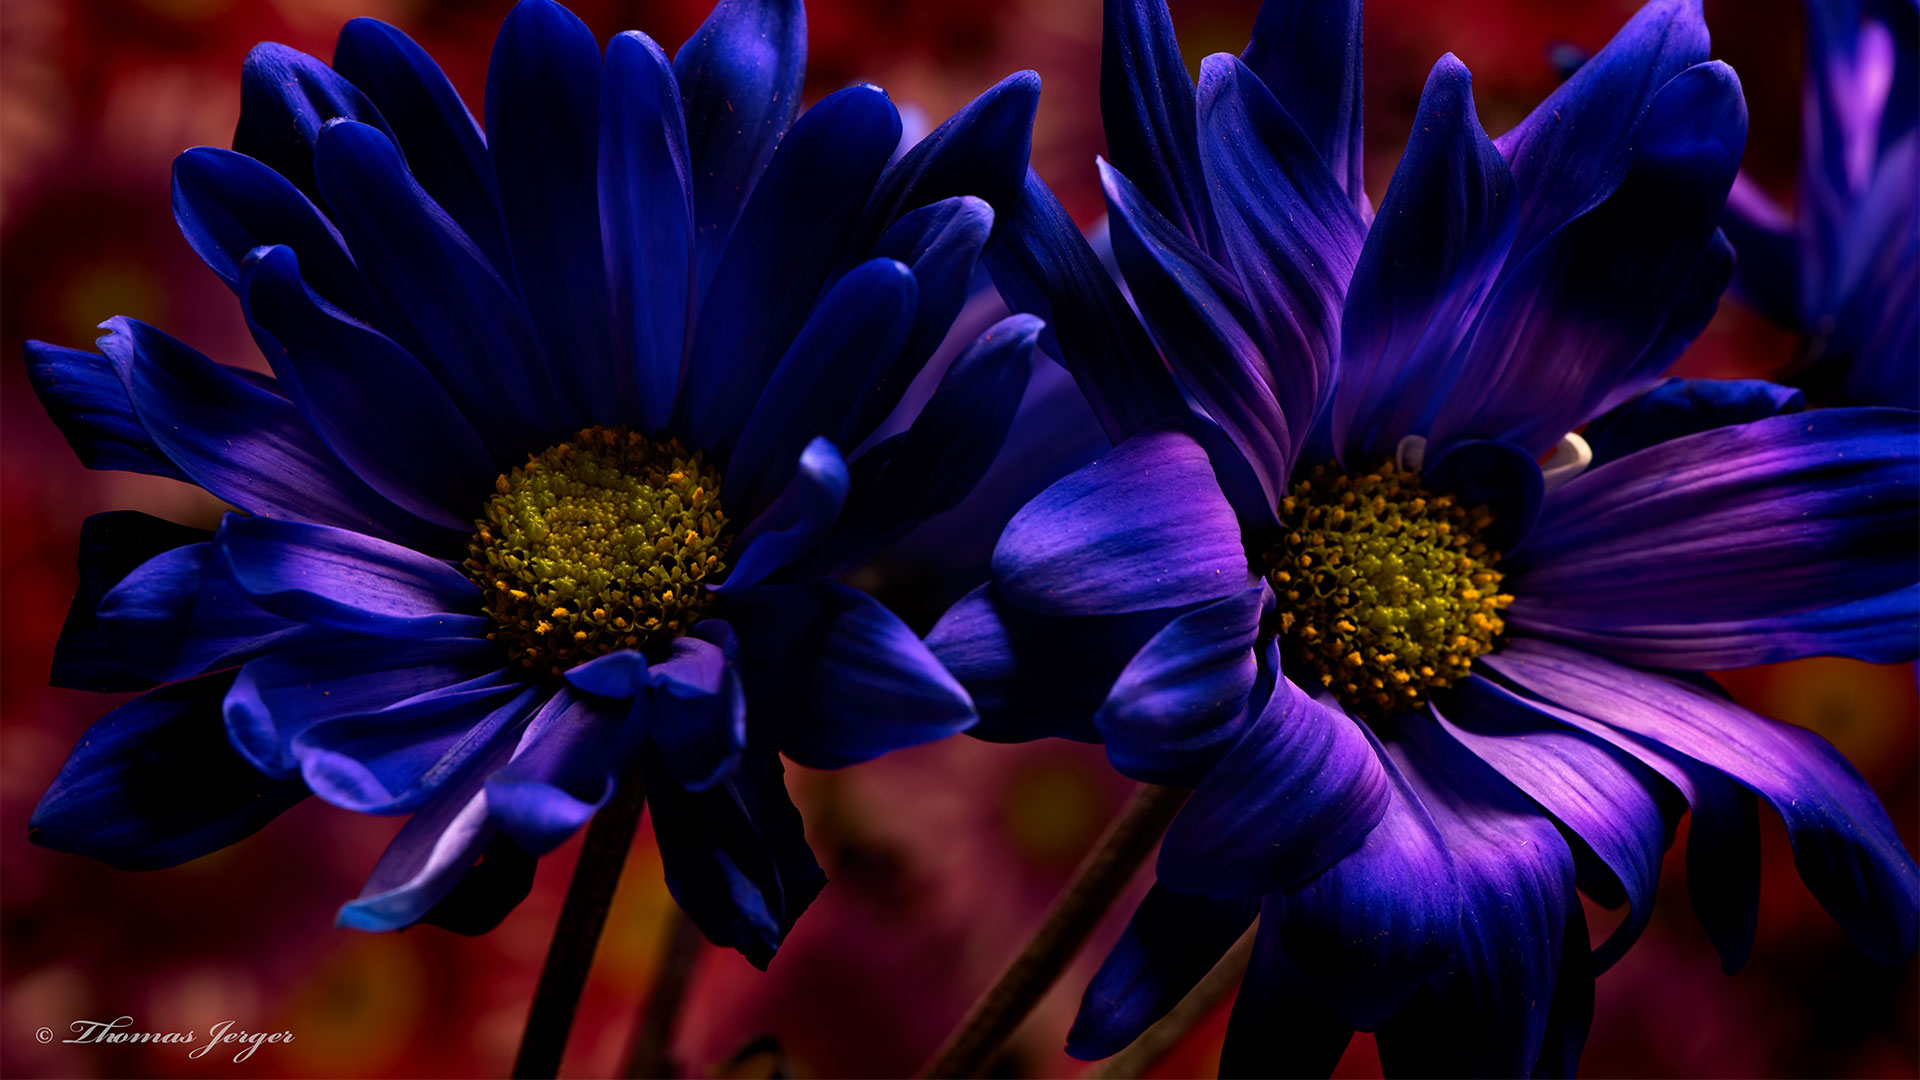 hd wallpaper für laptop,blume,blau,blütenblatt,pflanze,blühende pflanze